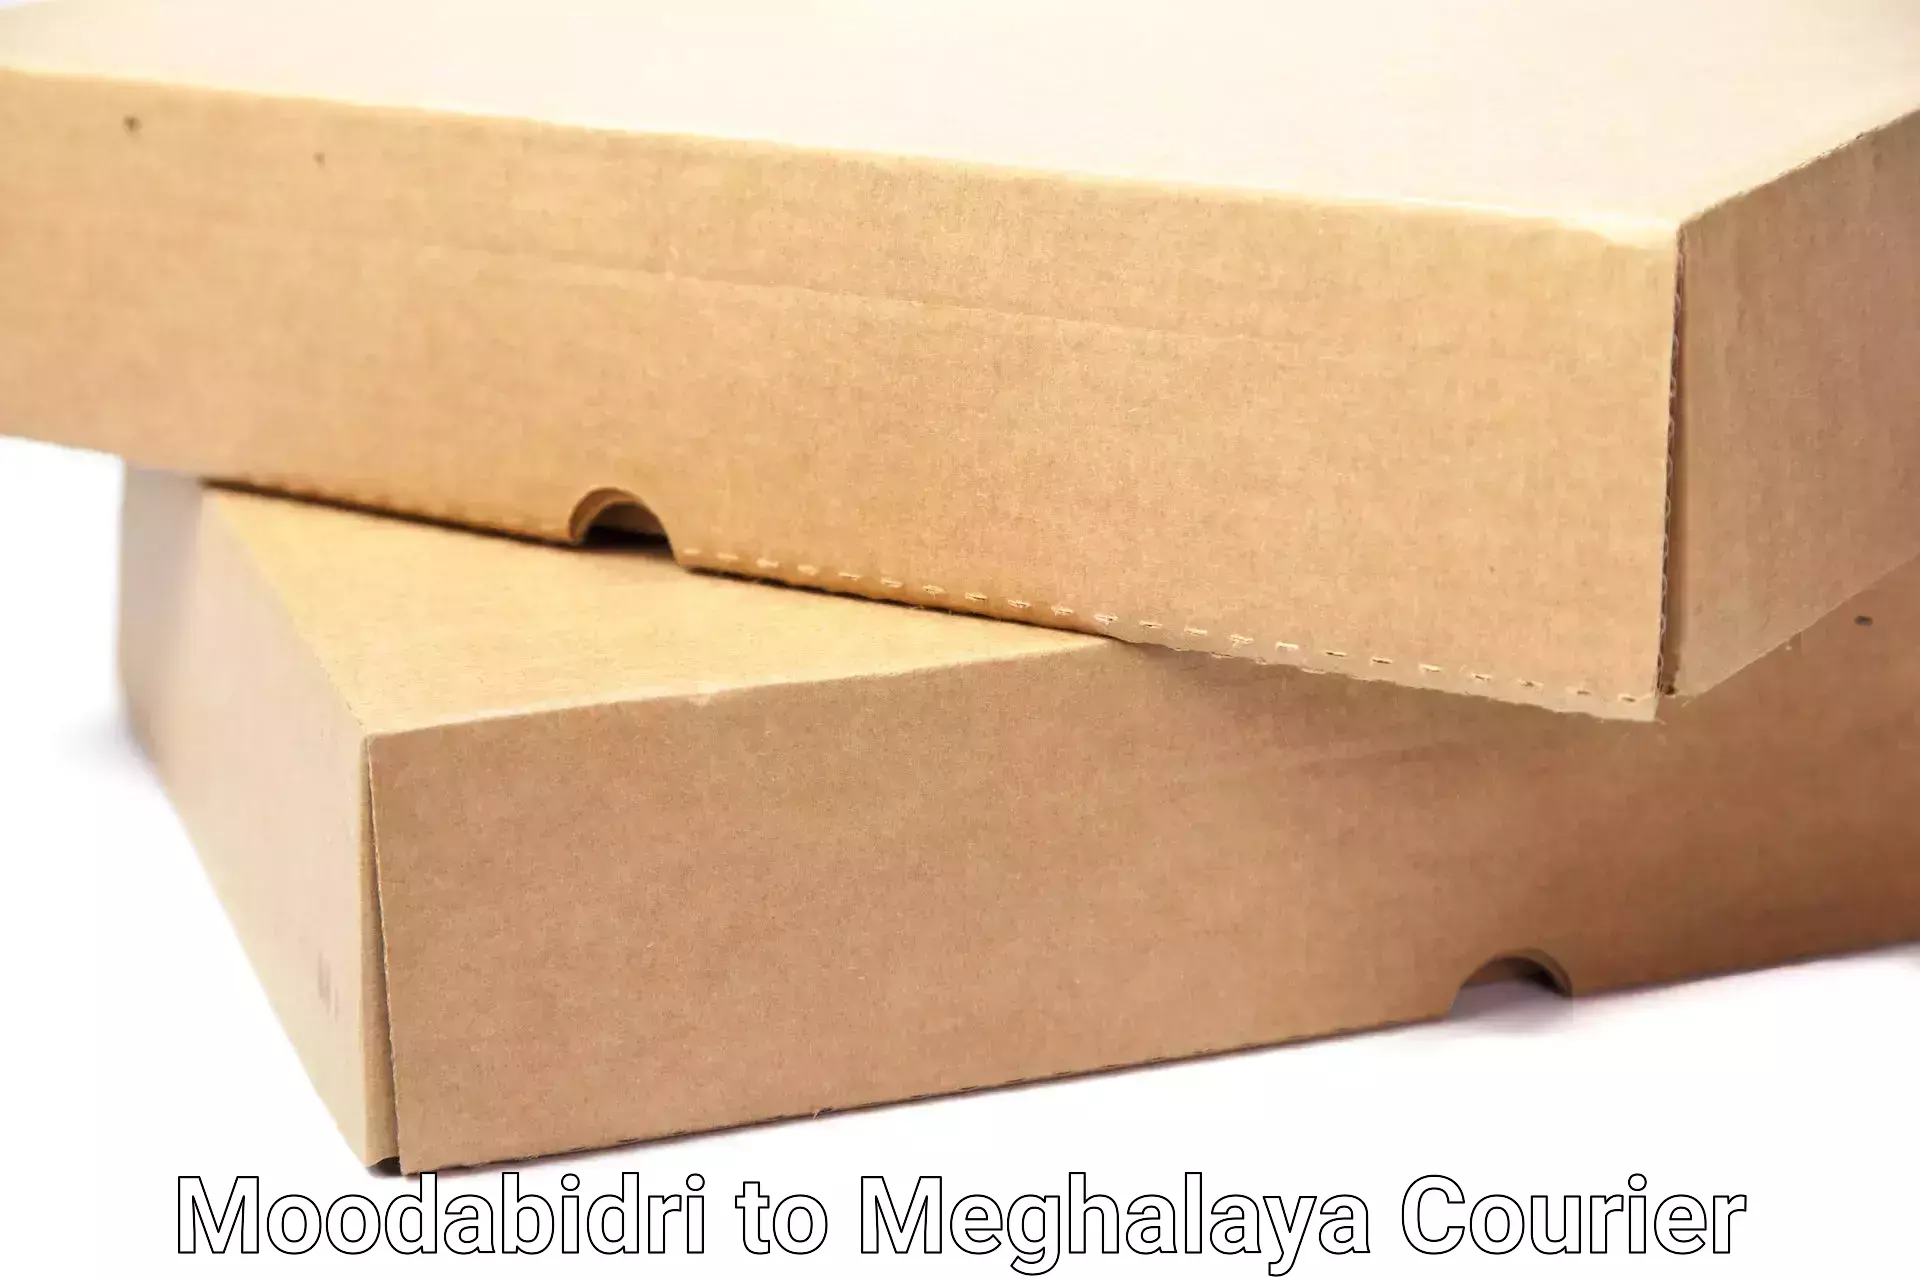 Professional movers in Moodabidri to Meghalaya